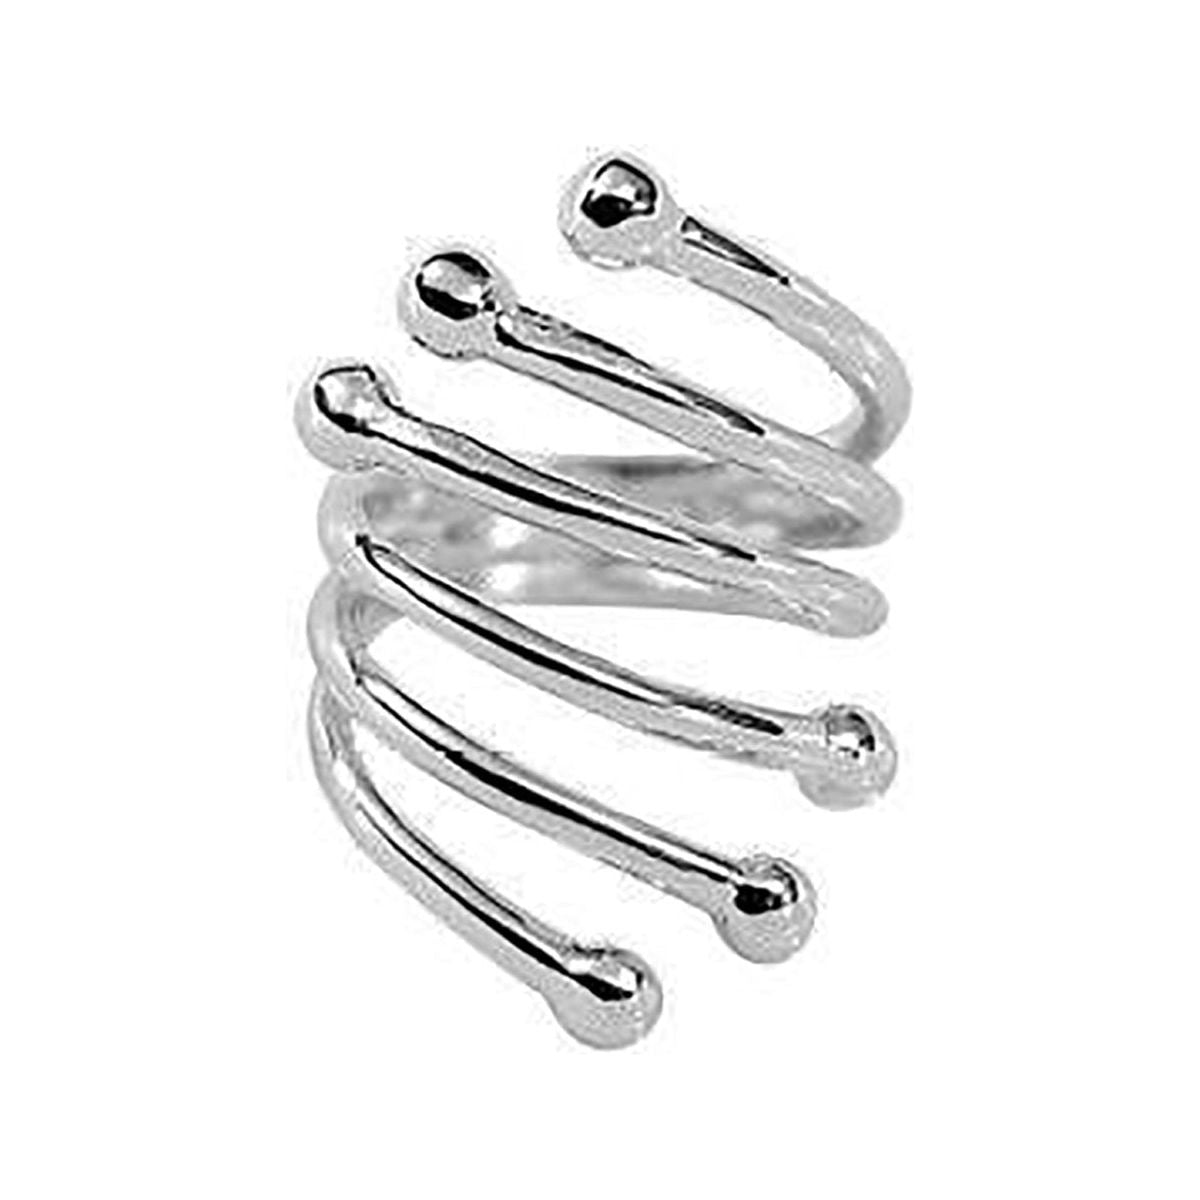 6 Row Modern Twist Wrap Silver Fashion Ring